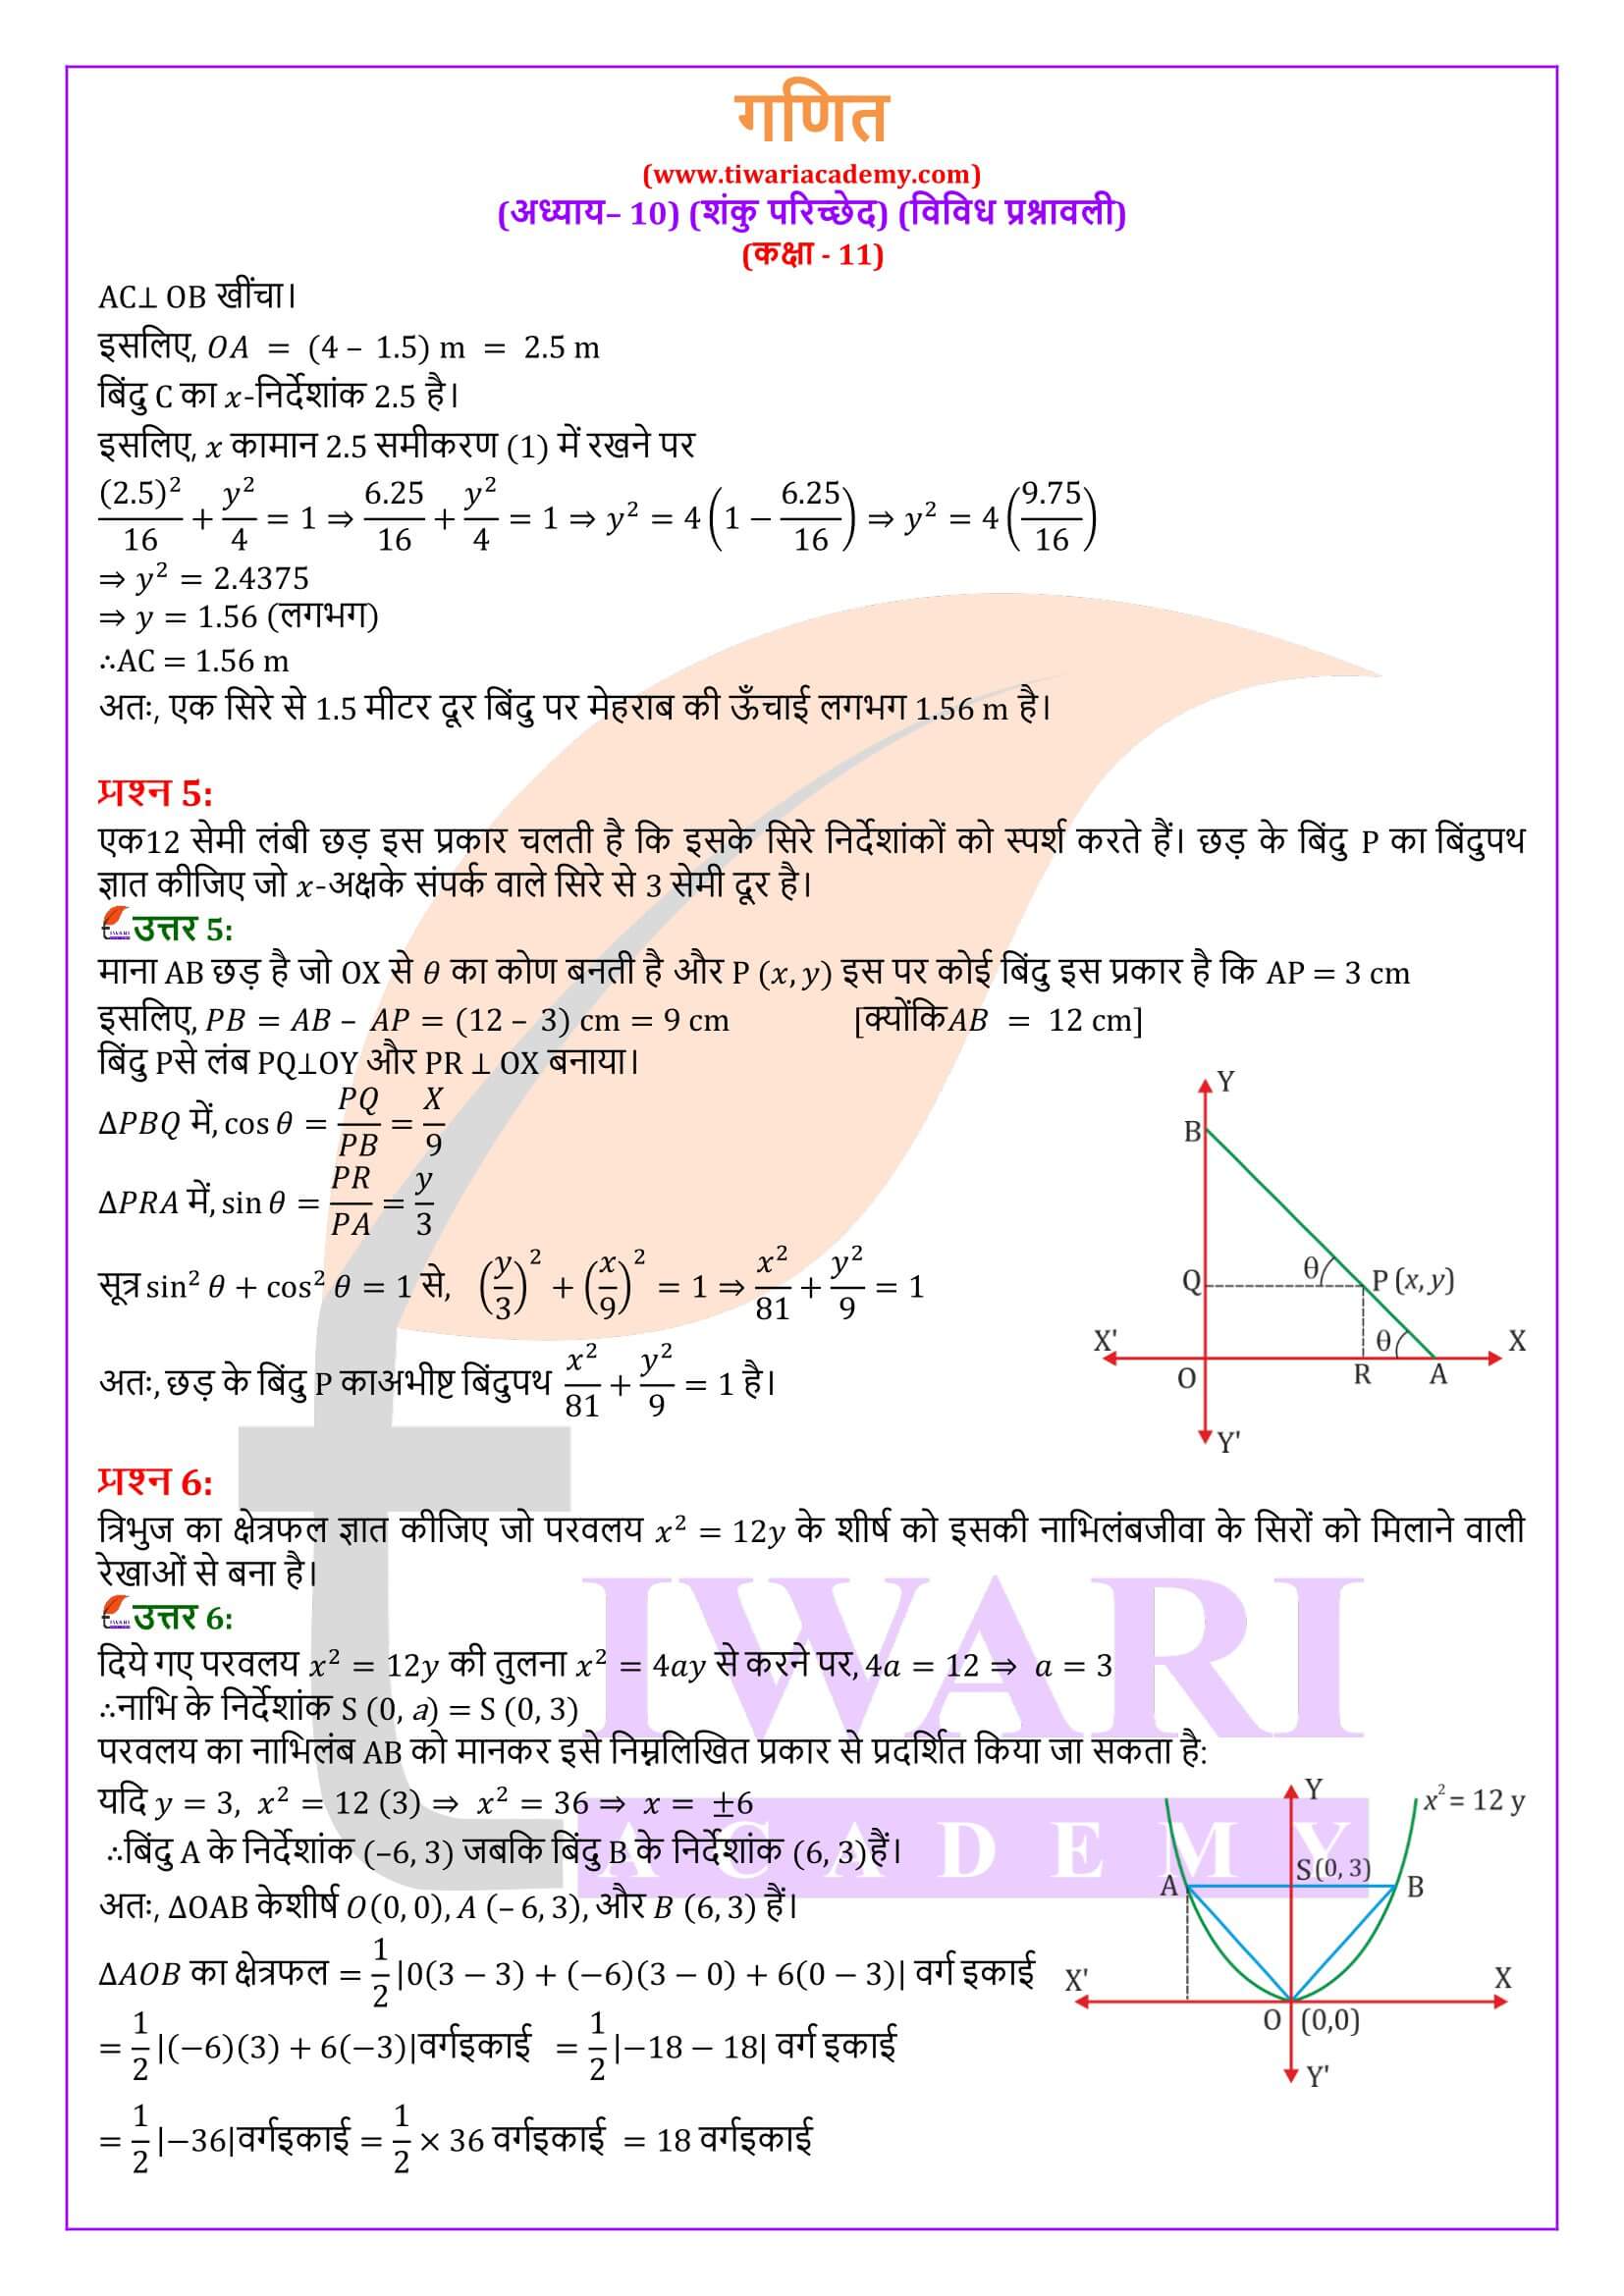 एनसीईआरटी समाधान कक्षा 11 गणित अध्याय 10 विविध प्रश्नावली के हल हिंदी में